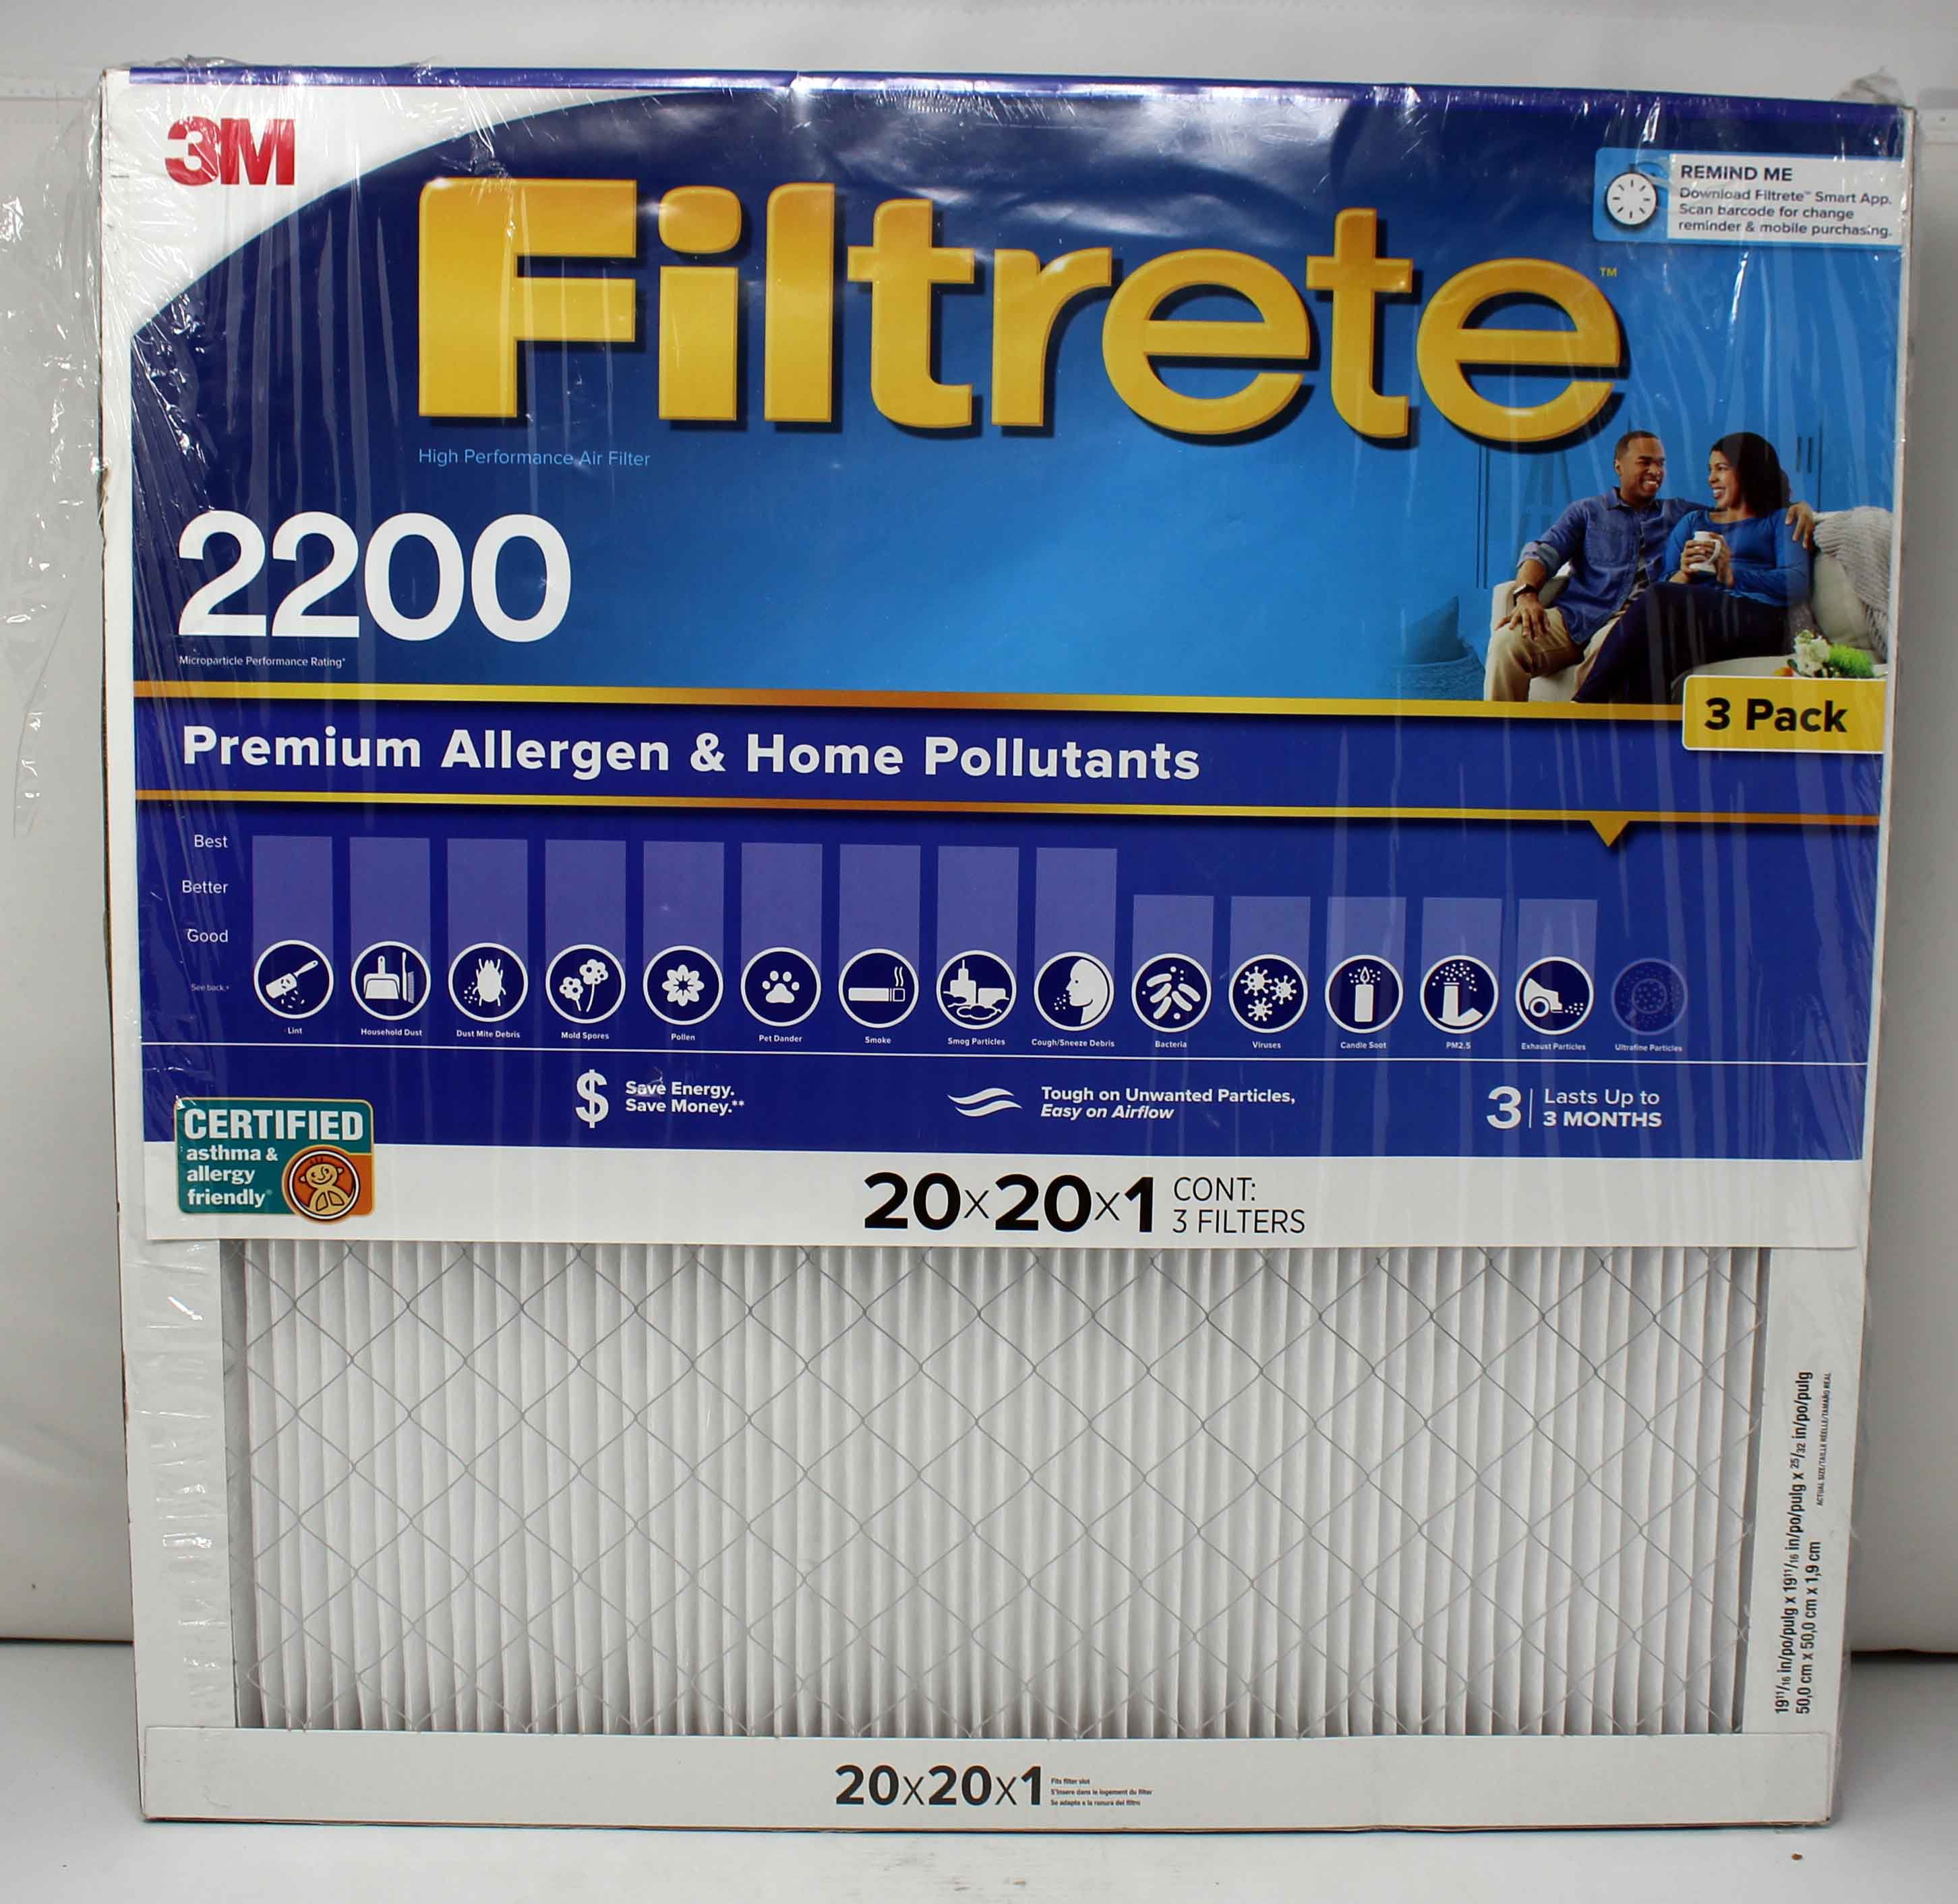 3m-filtrete-premium-allergen-home-pollutants-reduction-filter-20x20x1